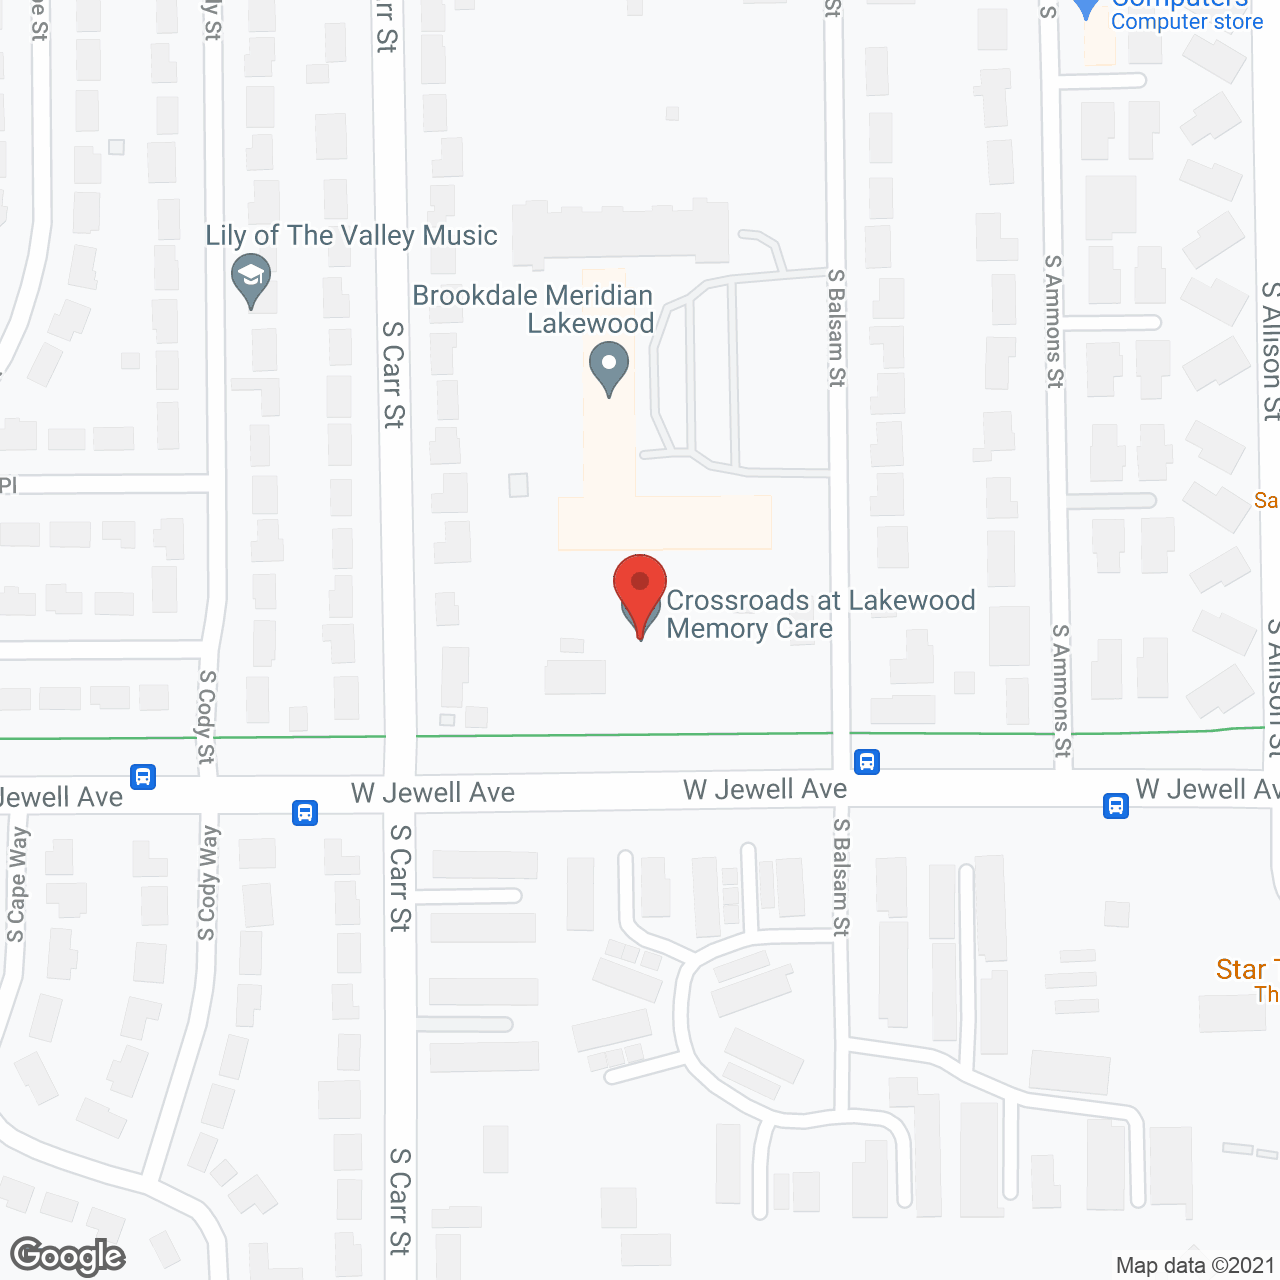 Crossroads at Lakewood Memory Care in google map